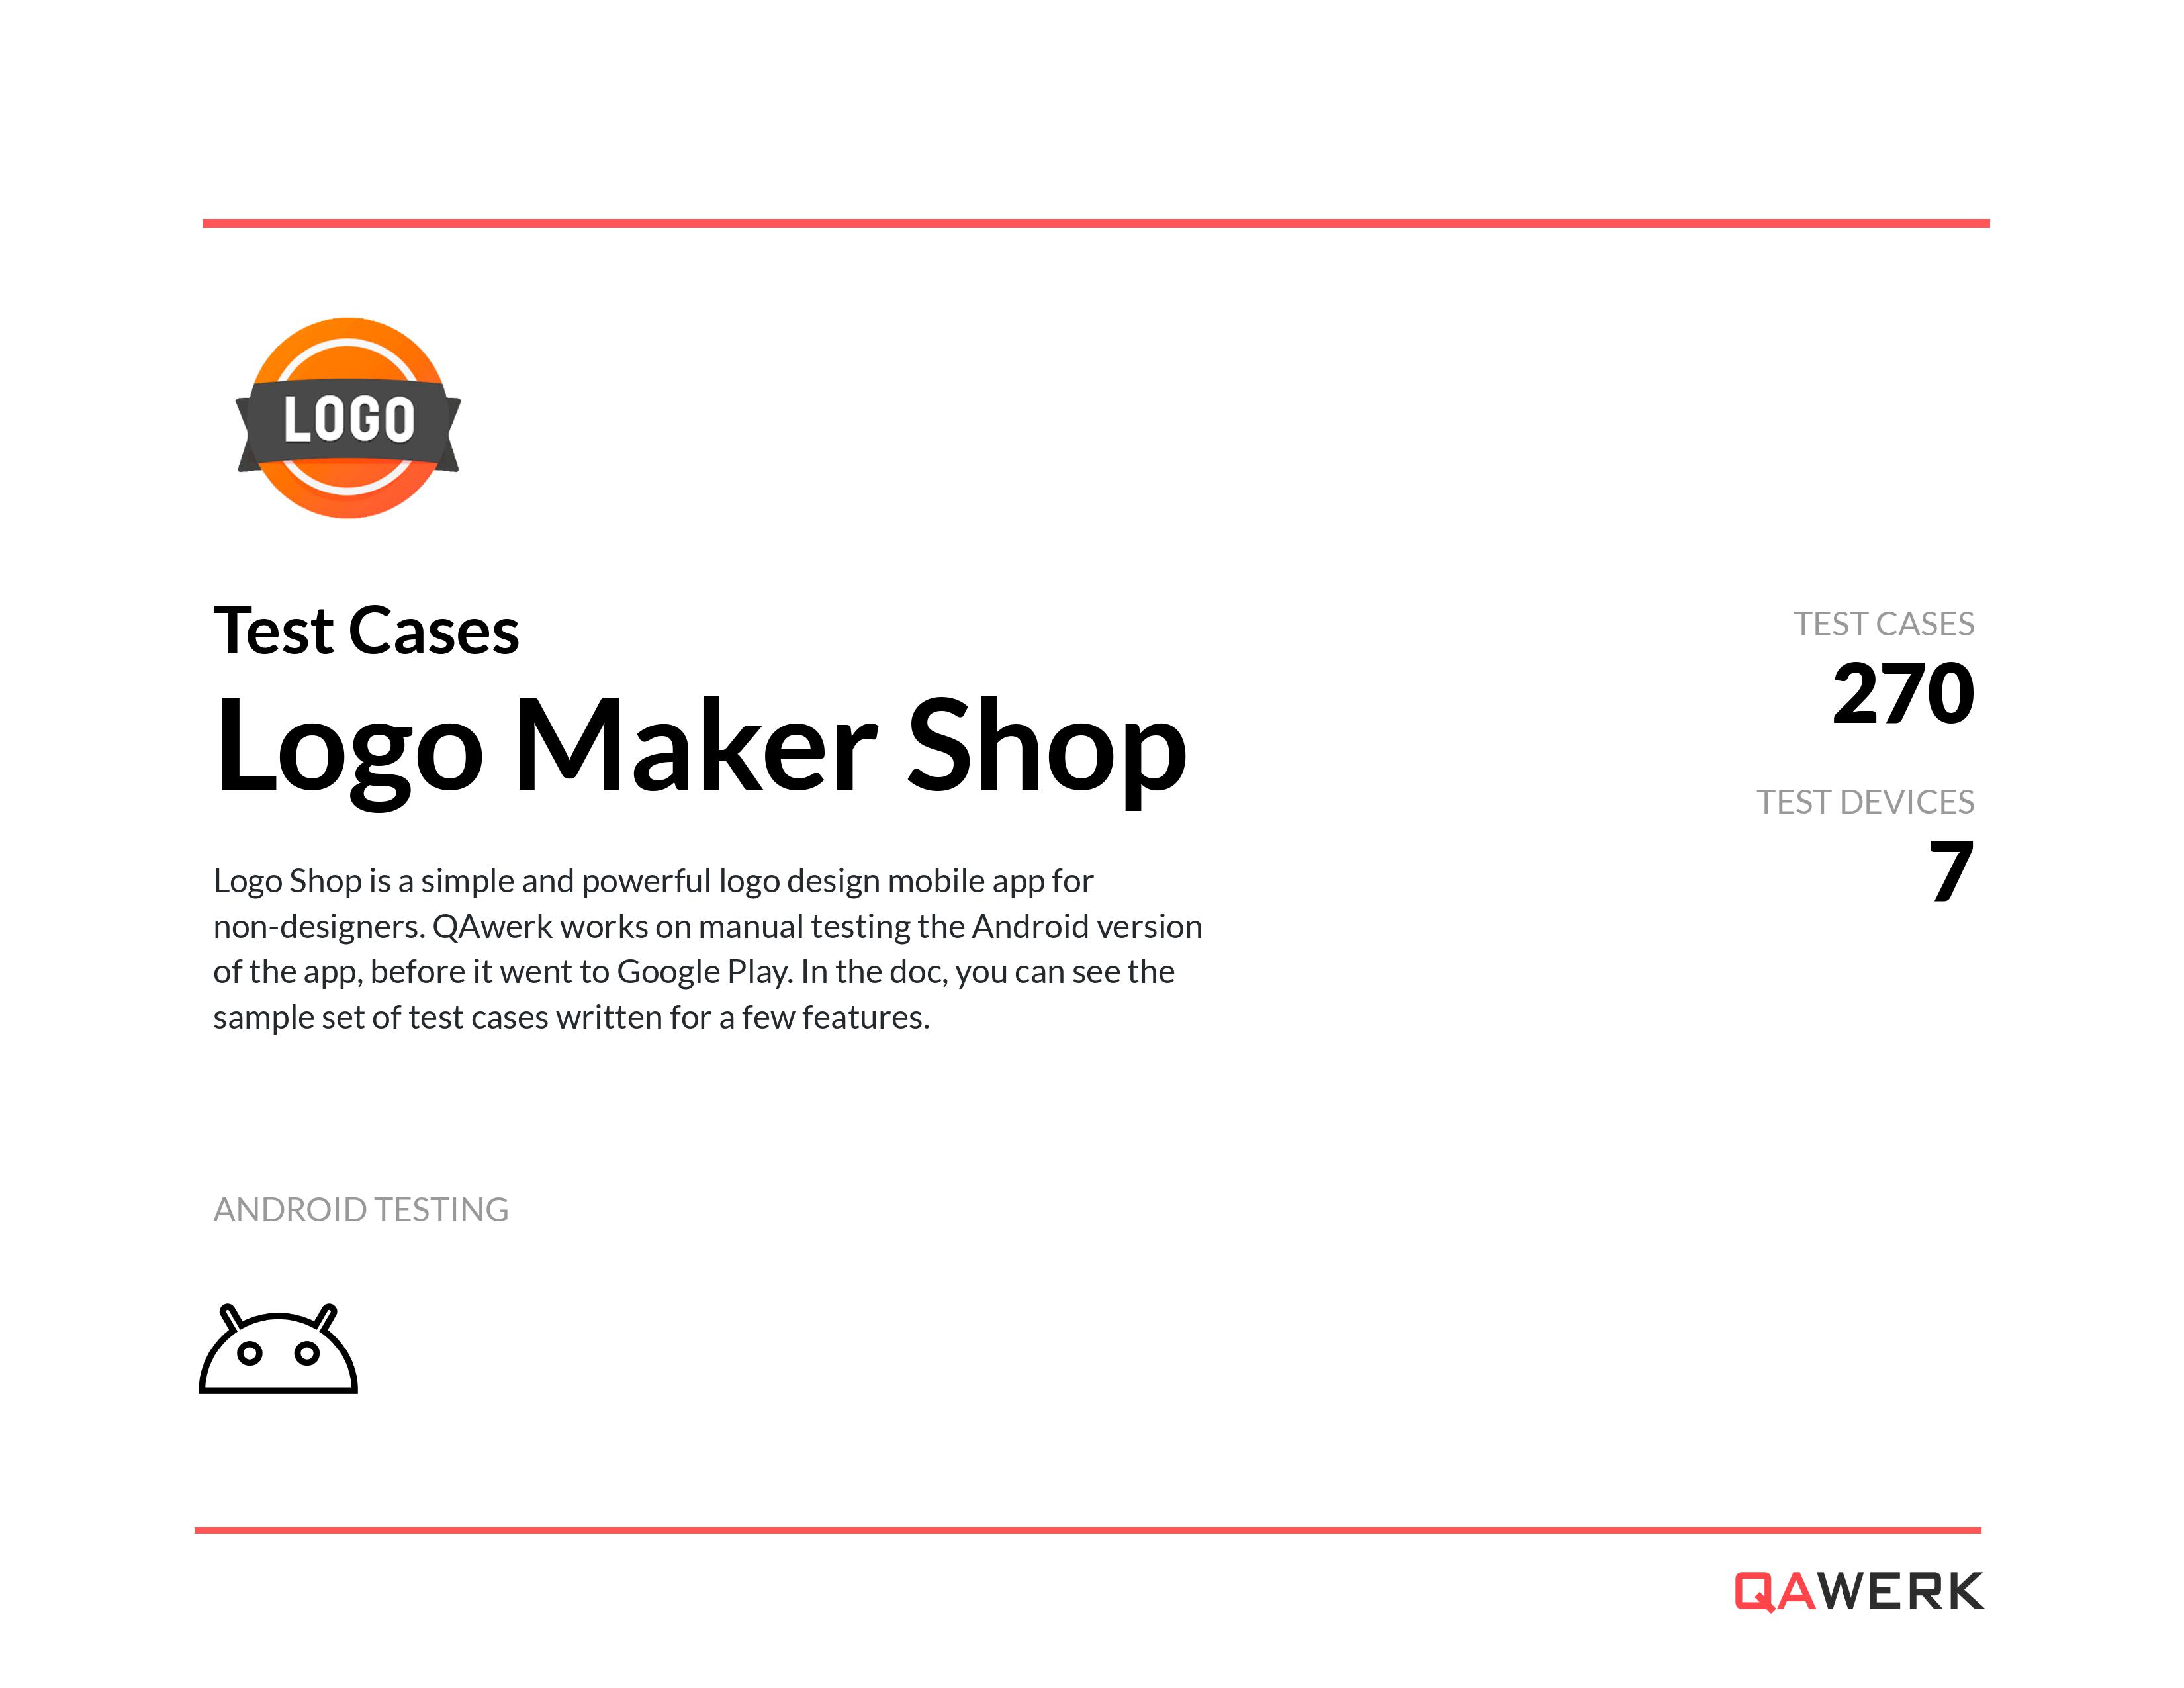 Logo Maker Shop test cases